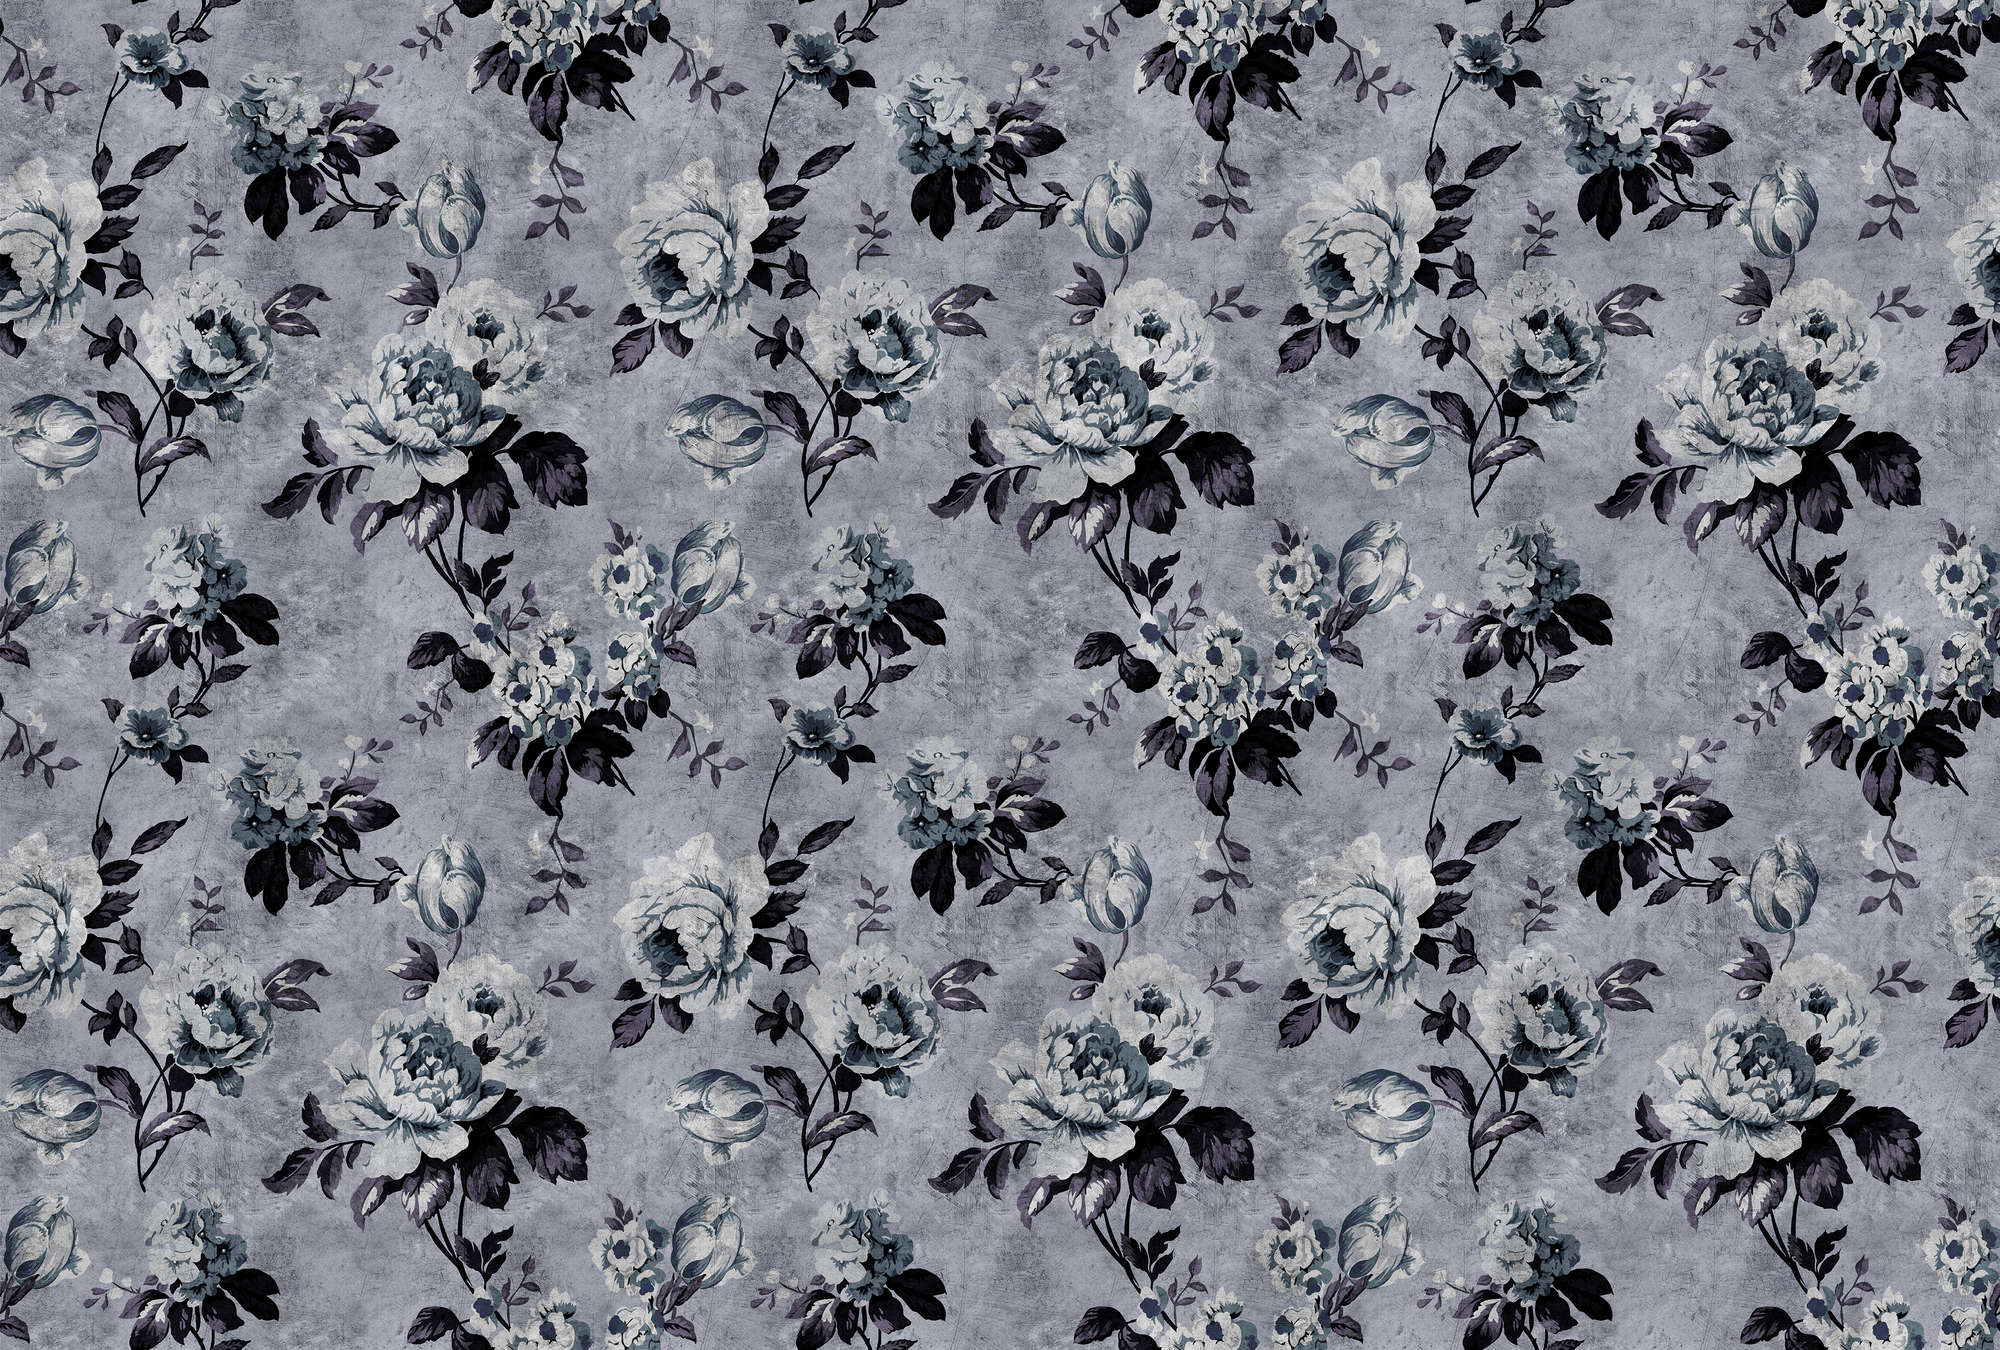             Wild roses 6 - Carta da parati con rose dall'aspetto retrò, grigio in struttura graffiata - Blu, Viola | Materiali non tessuto liscio perlato
        